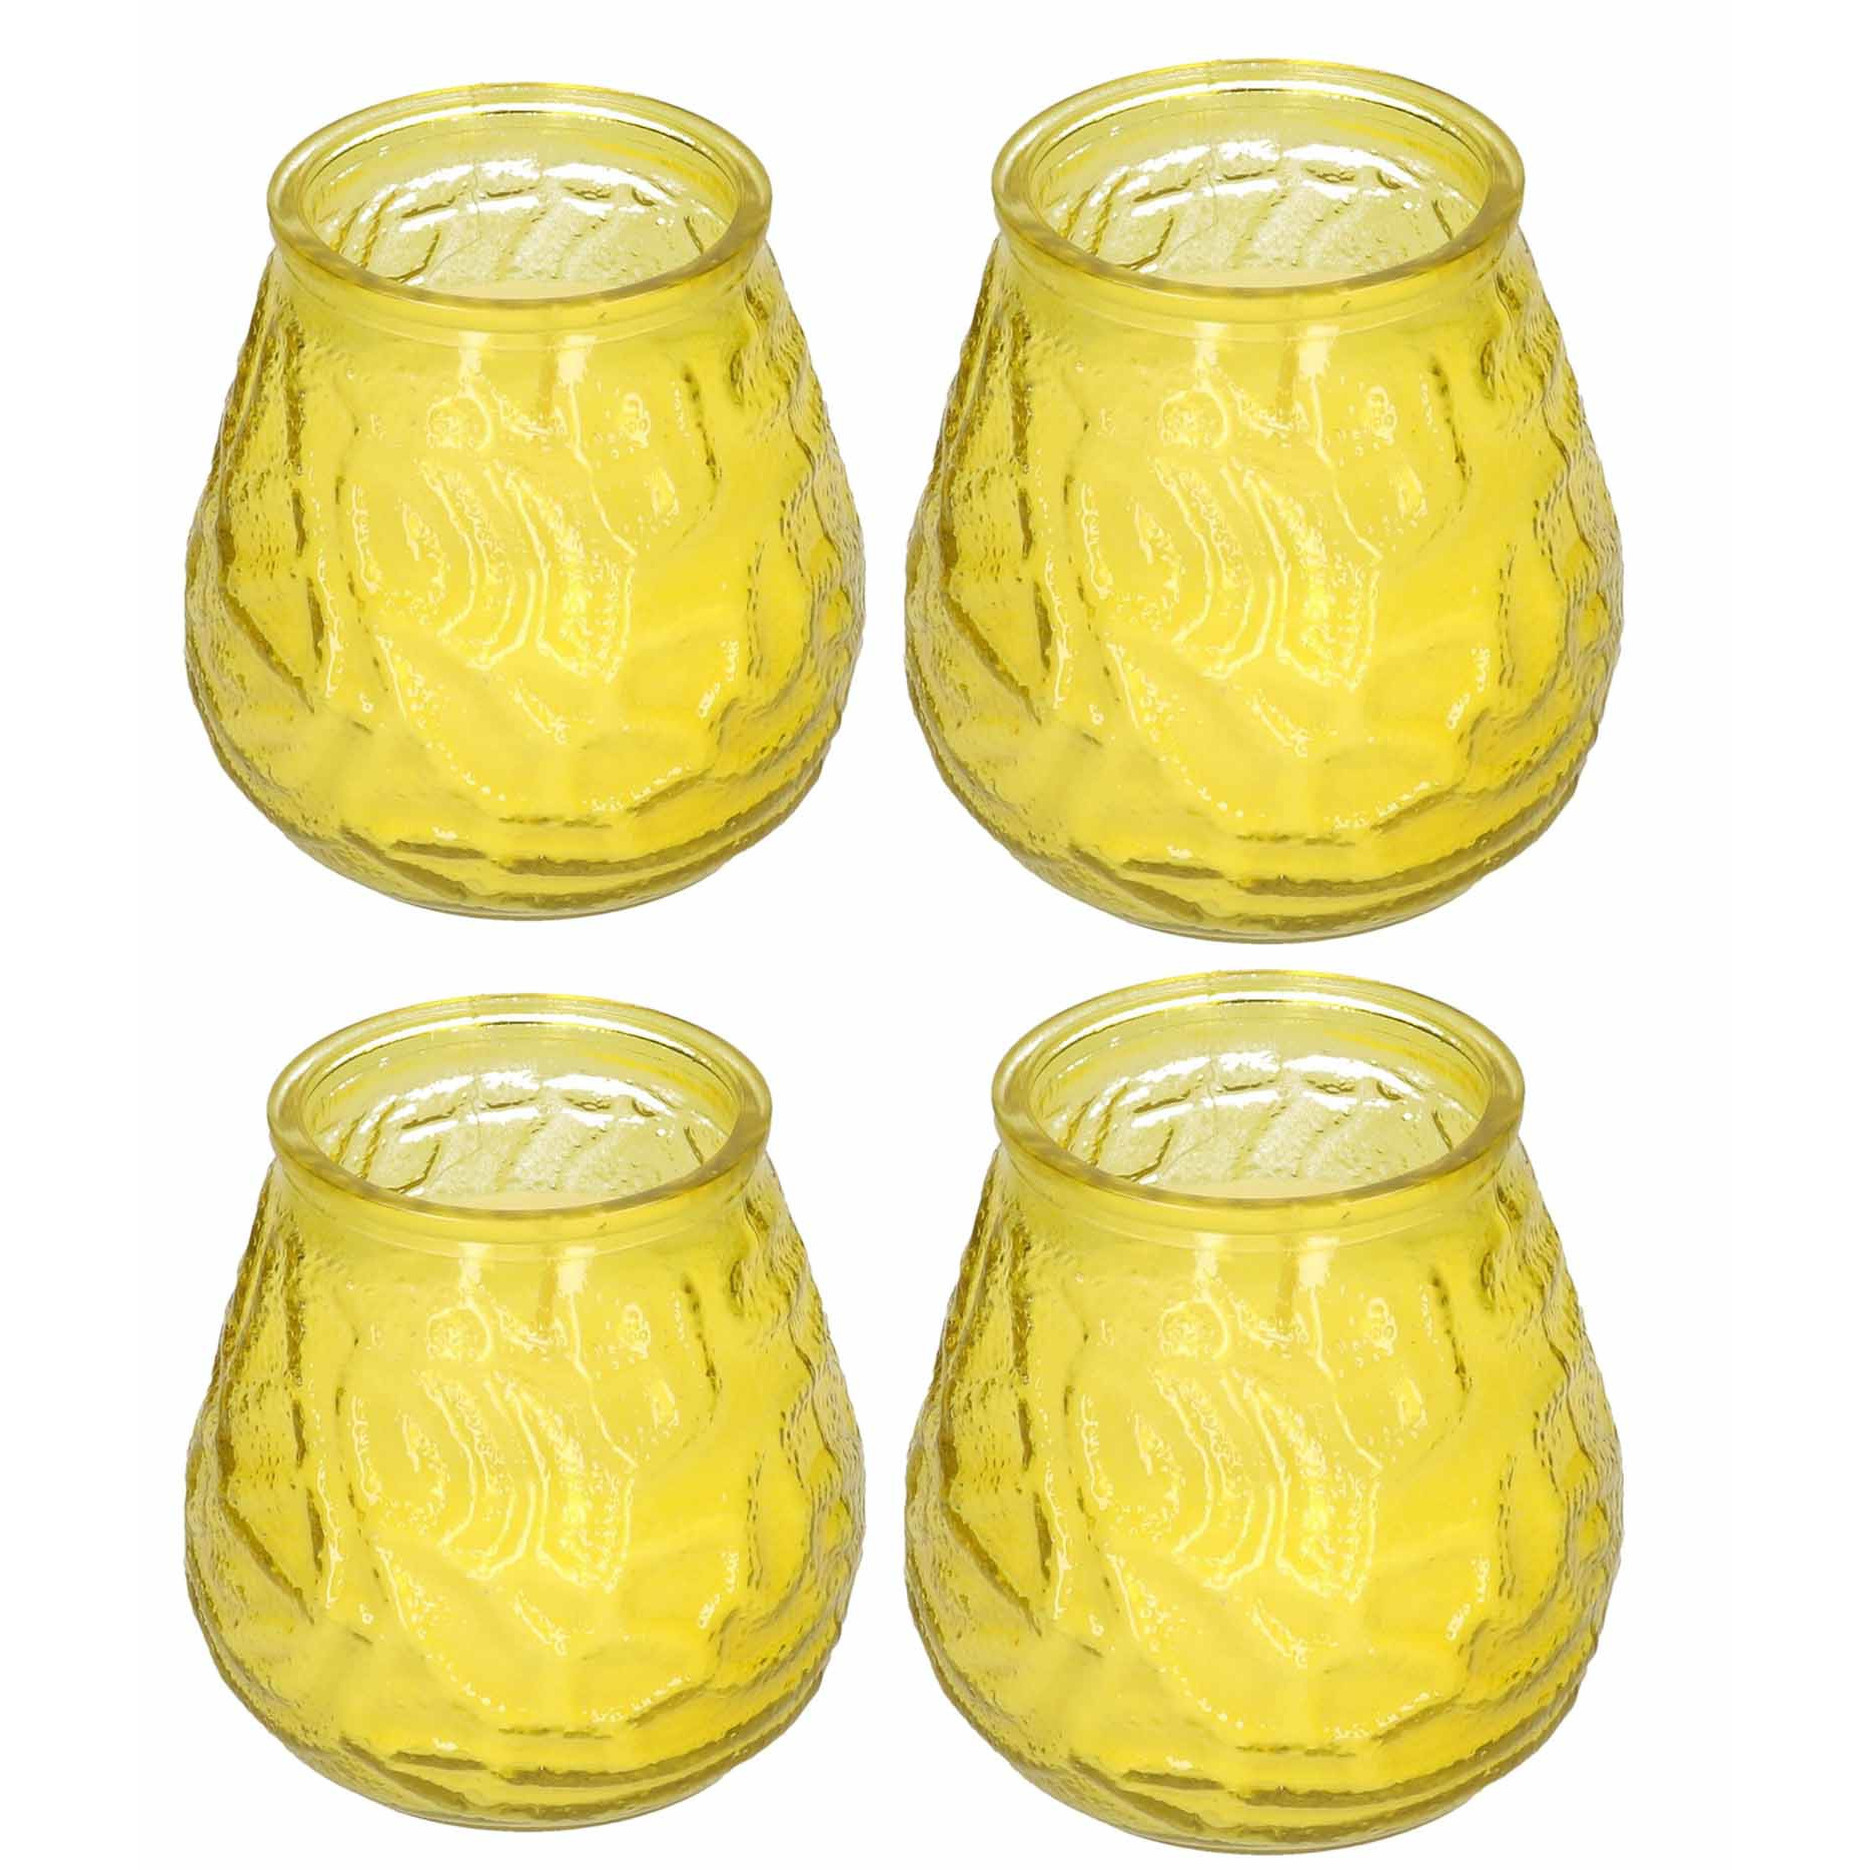 Windlicht geurkaars 4x geel glas 48 branduren citrusgeur